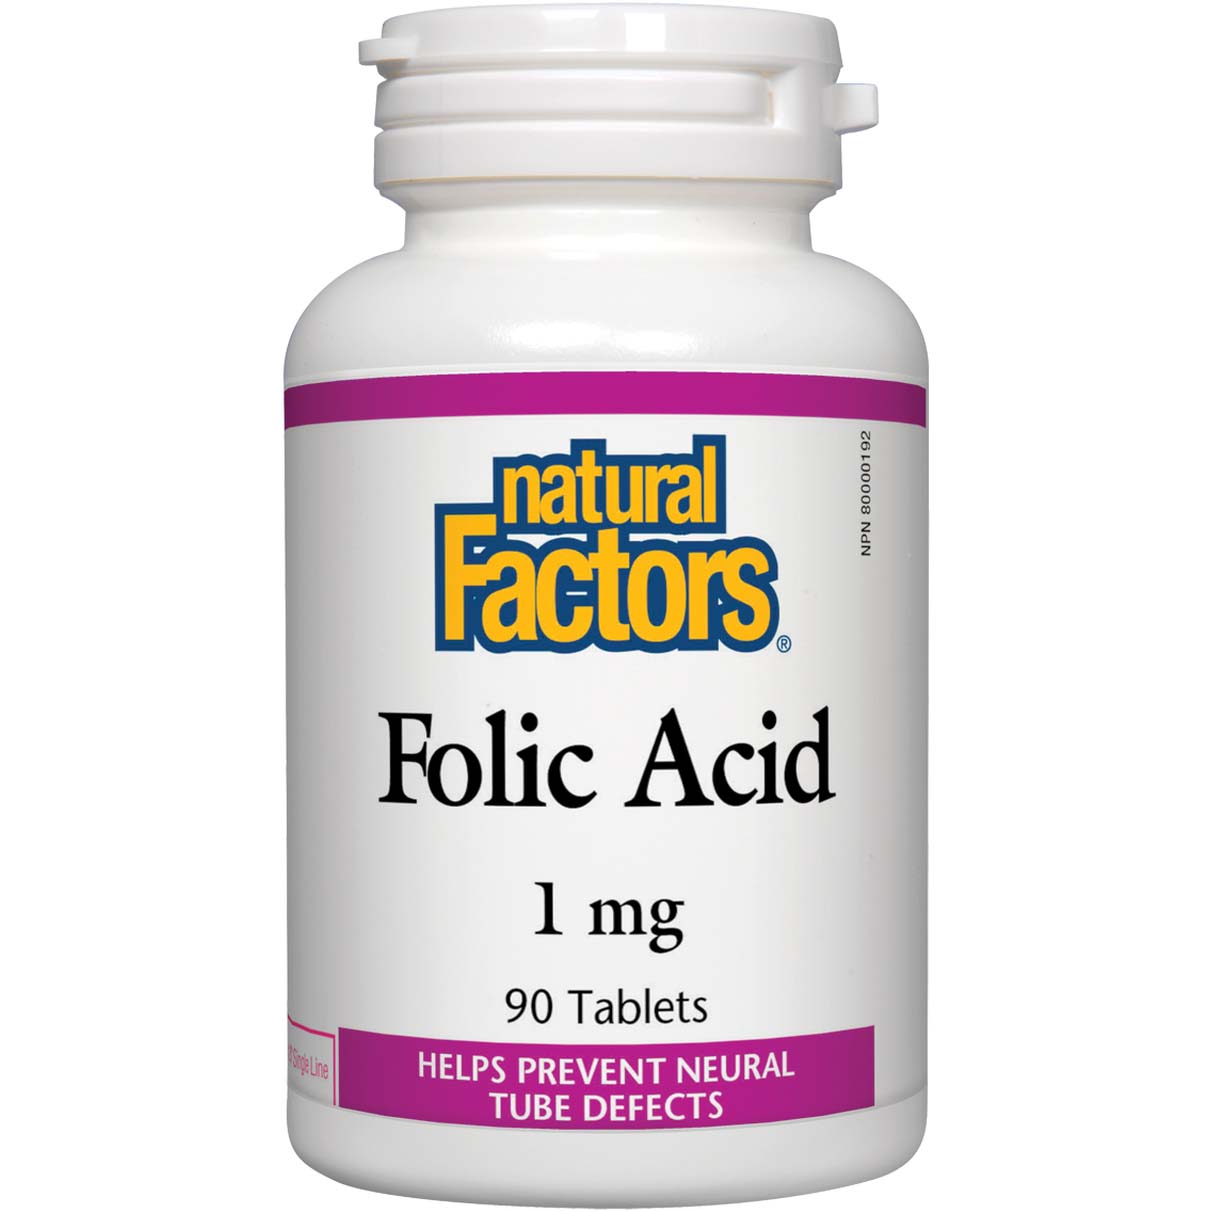 Natural Factors Folic Acid 90 Tablets 1 mg